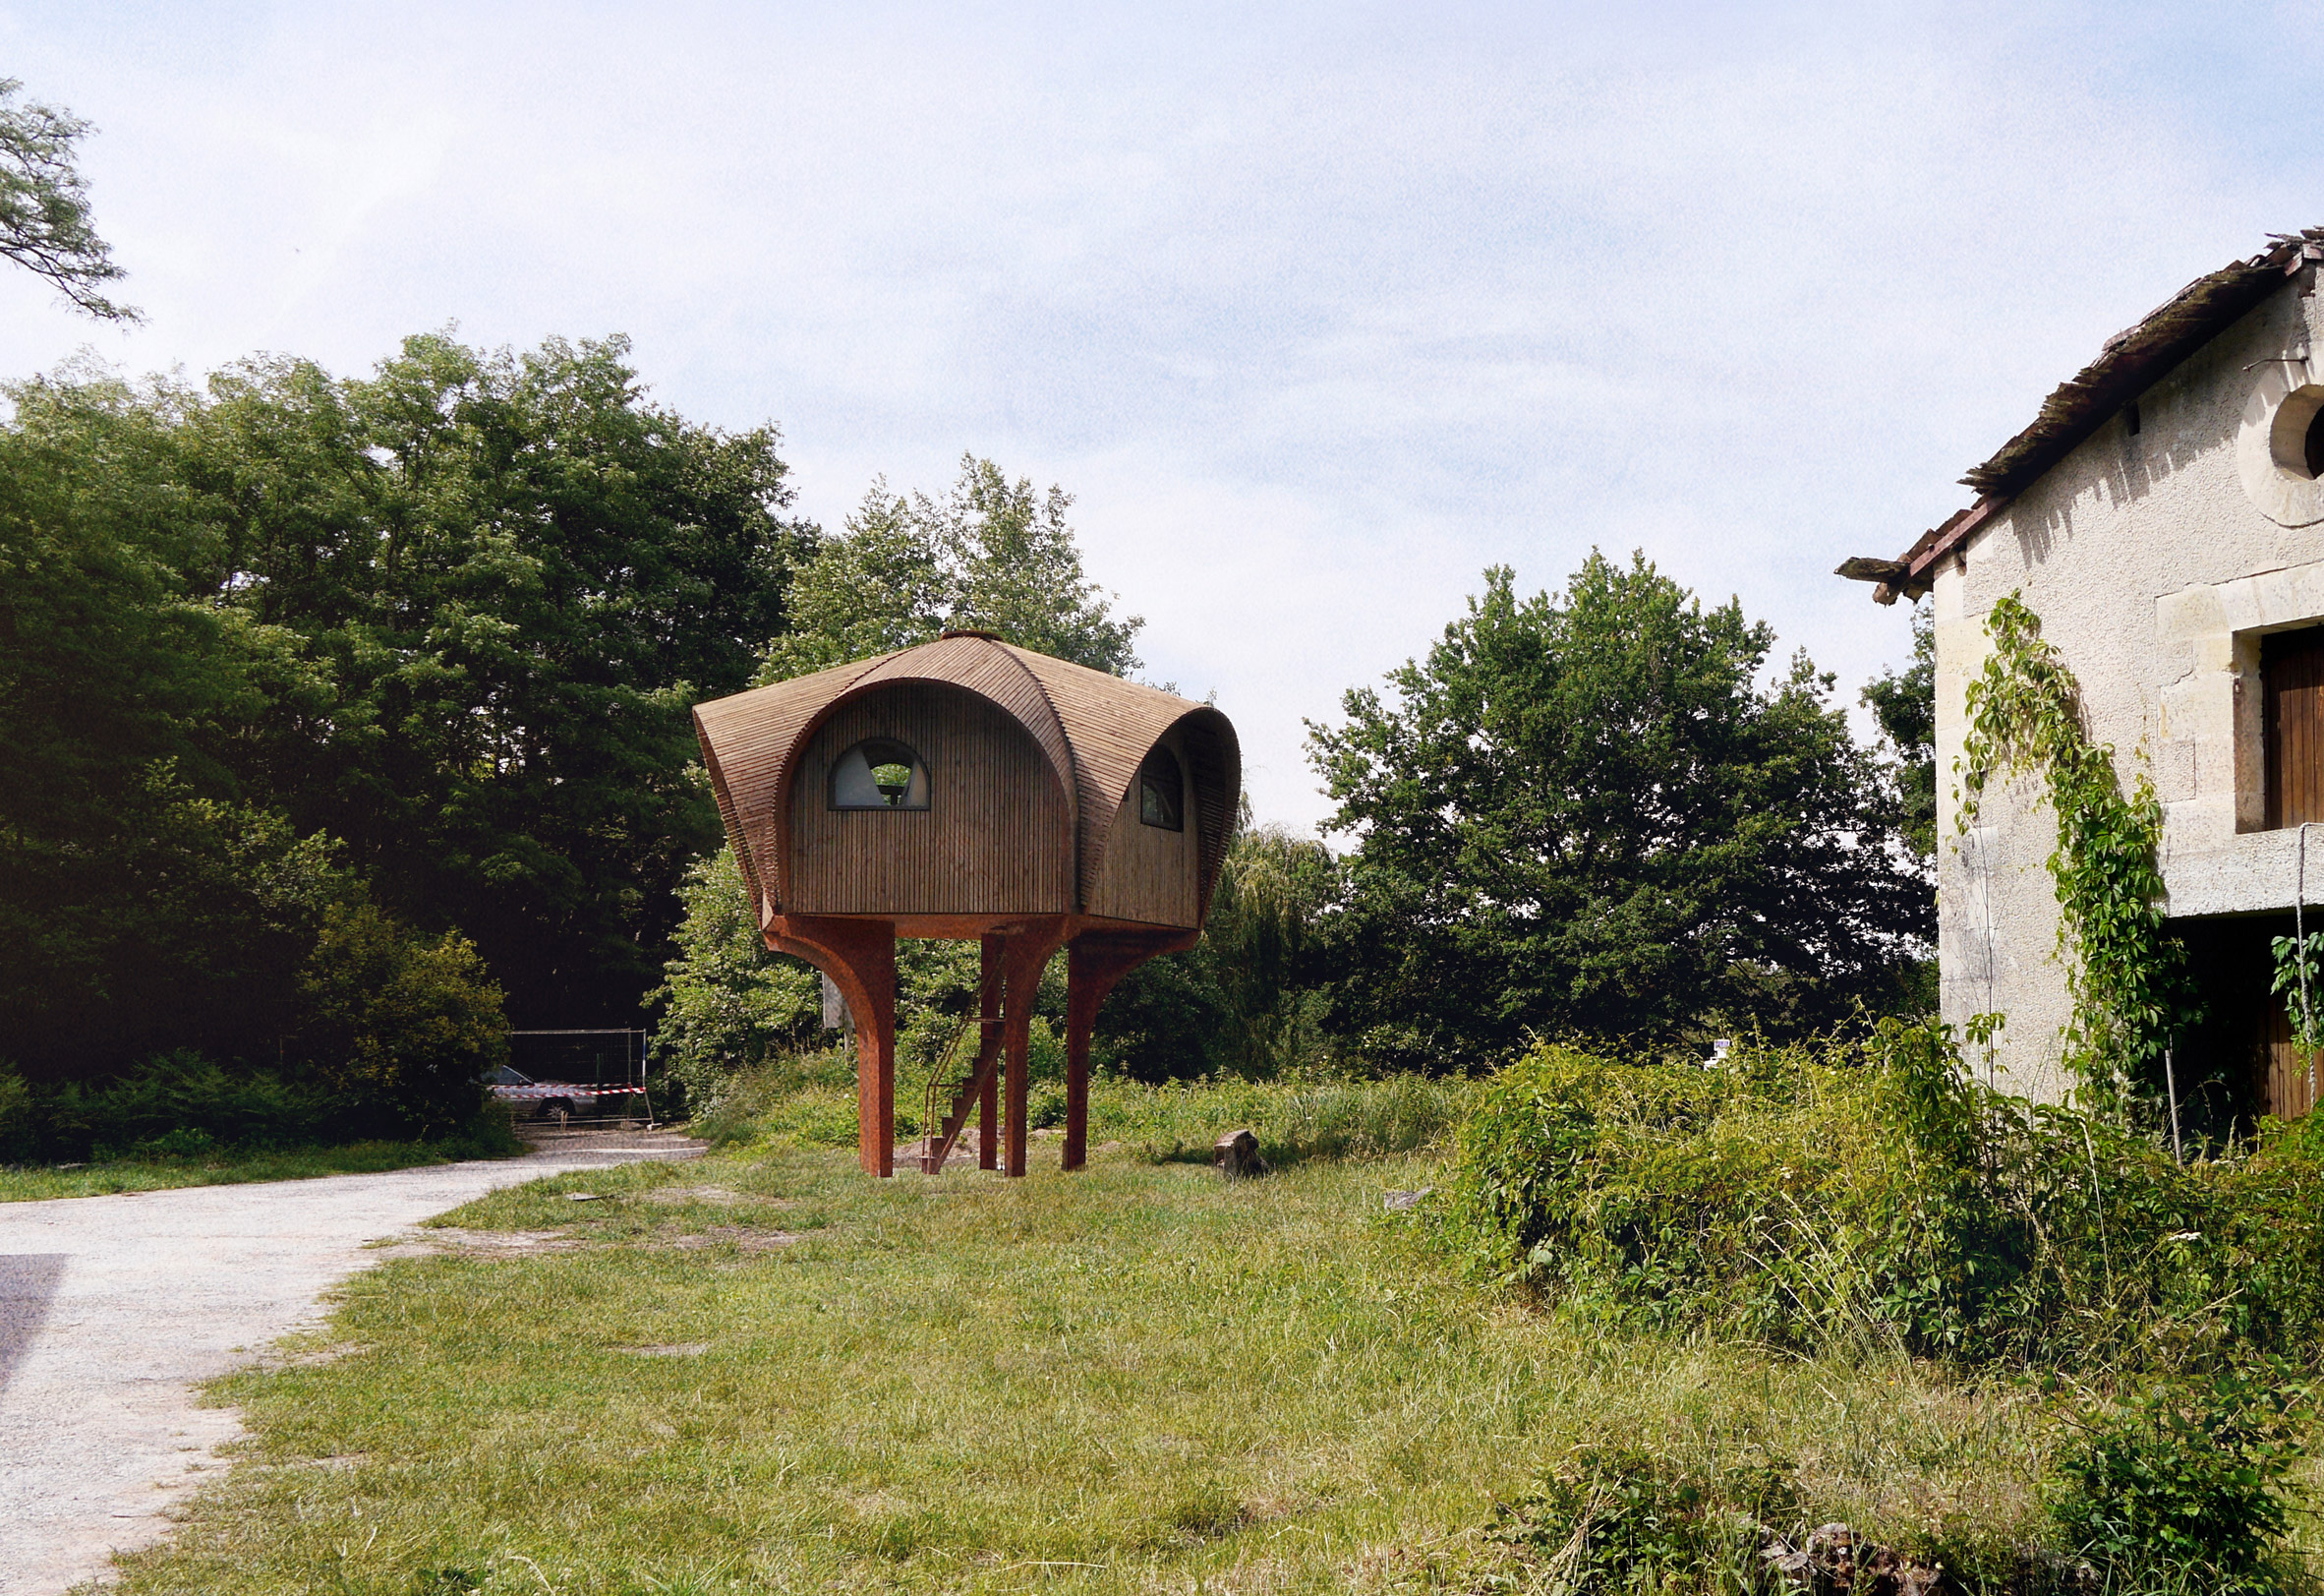 Studio Weave design a hiking shelter called Le Haut Perché